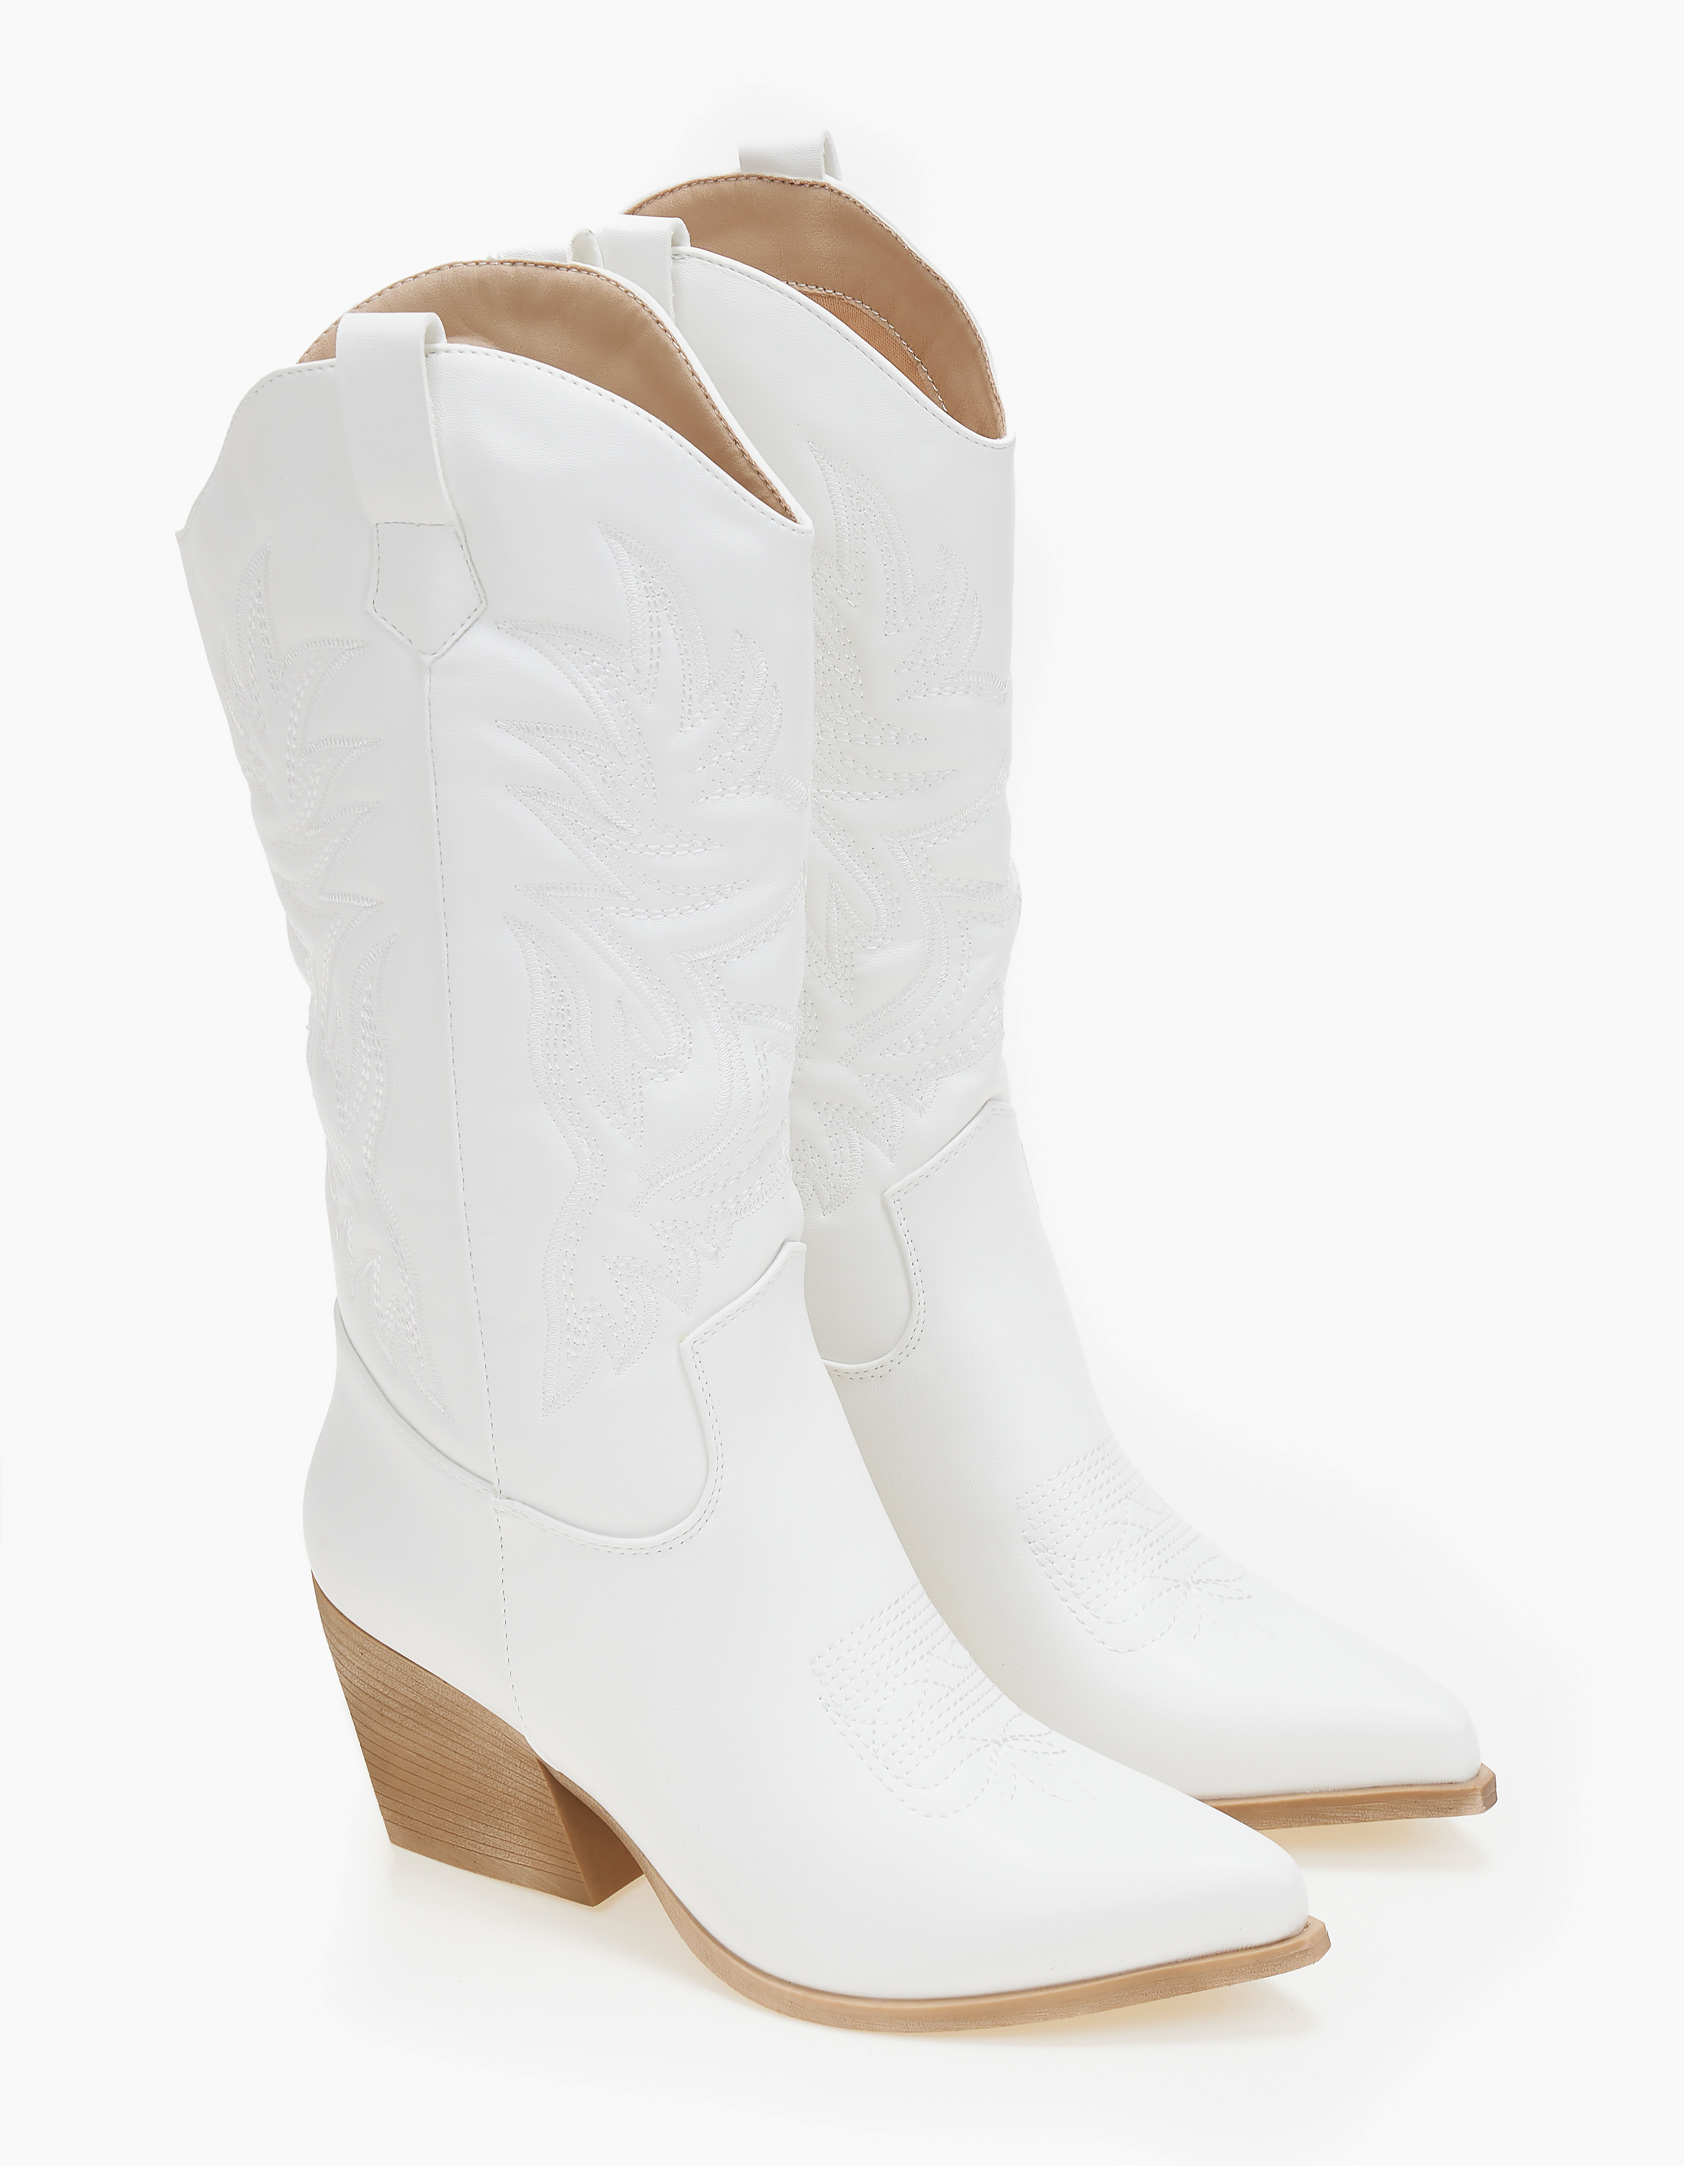 Παπούτσια > Western & Cowboy Cowboy μπότες με χοντρό τακούνι - Λευκό